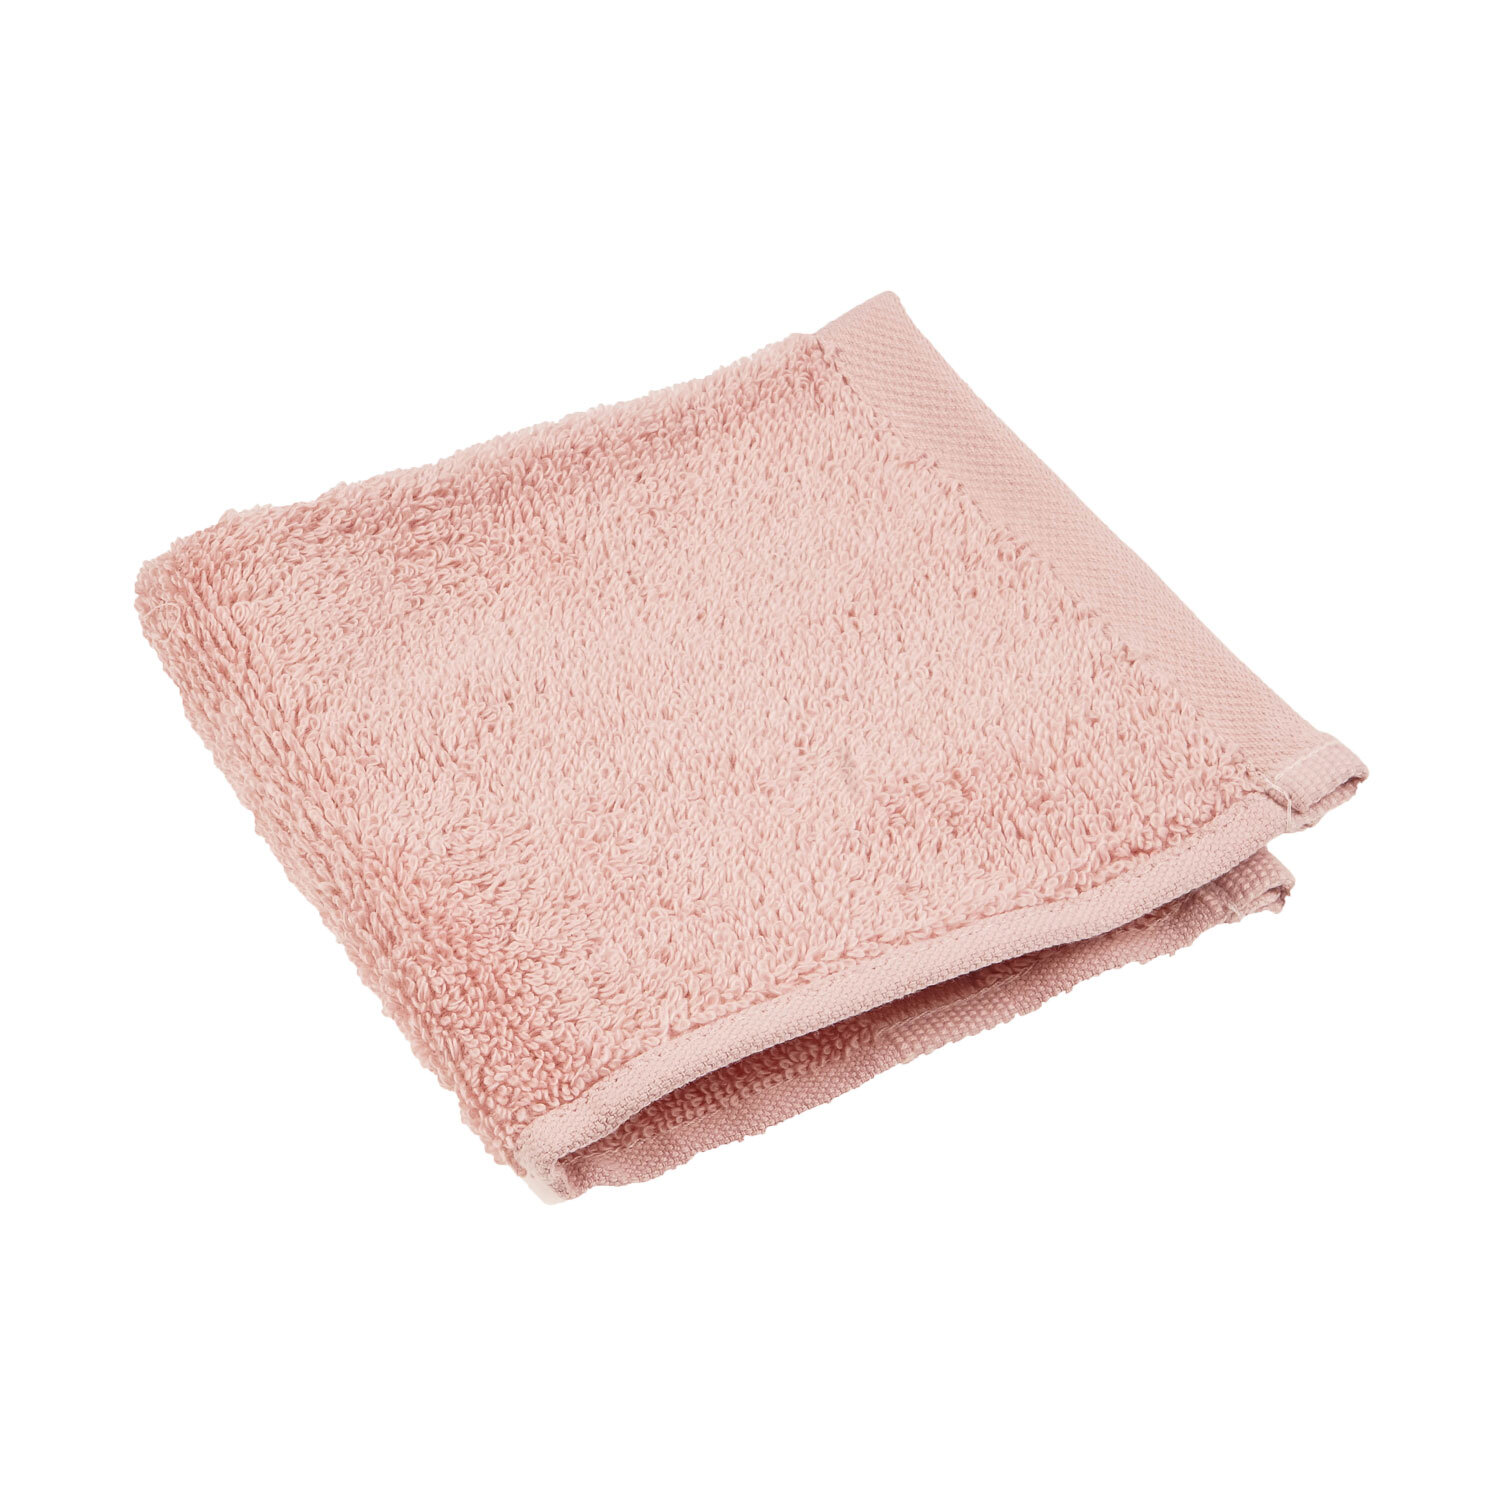 Divante Flannel Face Cloth - Dusky Pink Image 1